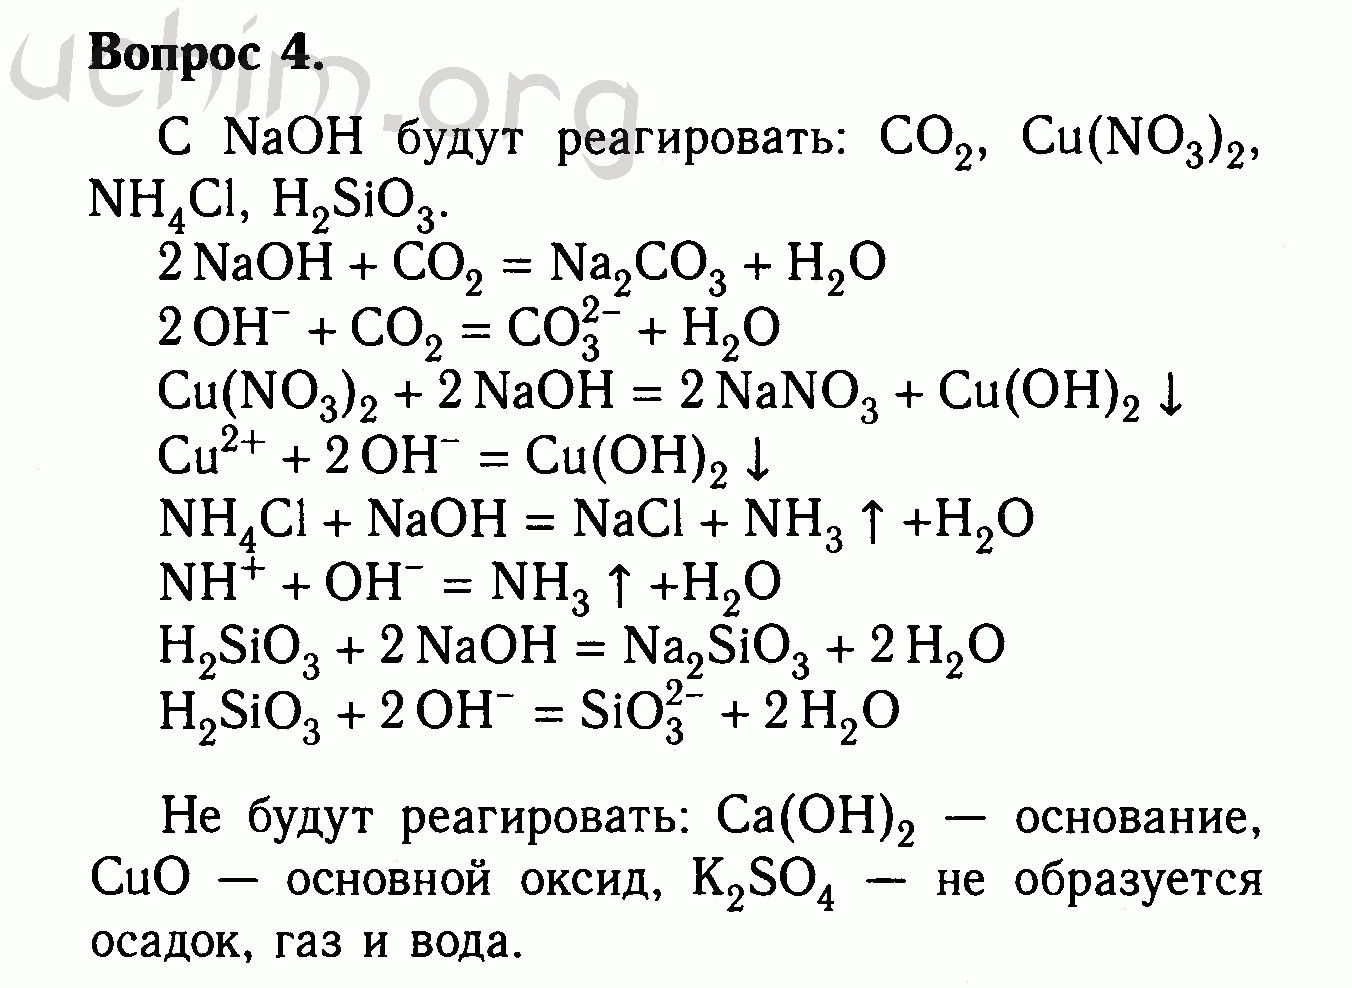 Нитрат магния сульфит натрия. Оксид меди + со4 Купрума. Оксид меди 2 плюс гидроксид натрия. С гидроксидом натрия реагирует оксид меди 2. Магний плюс фосфат меди 2.